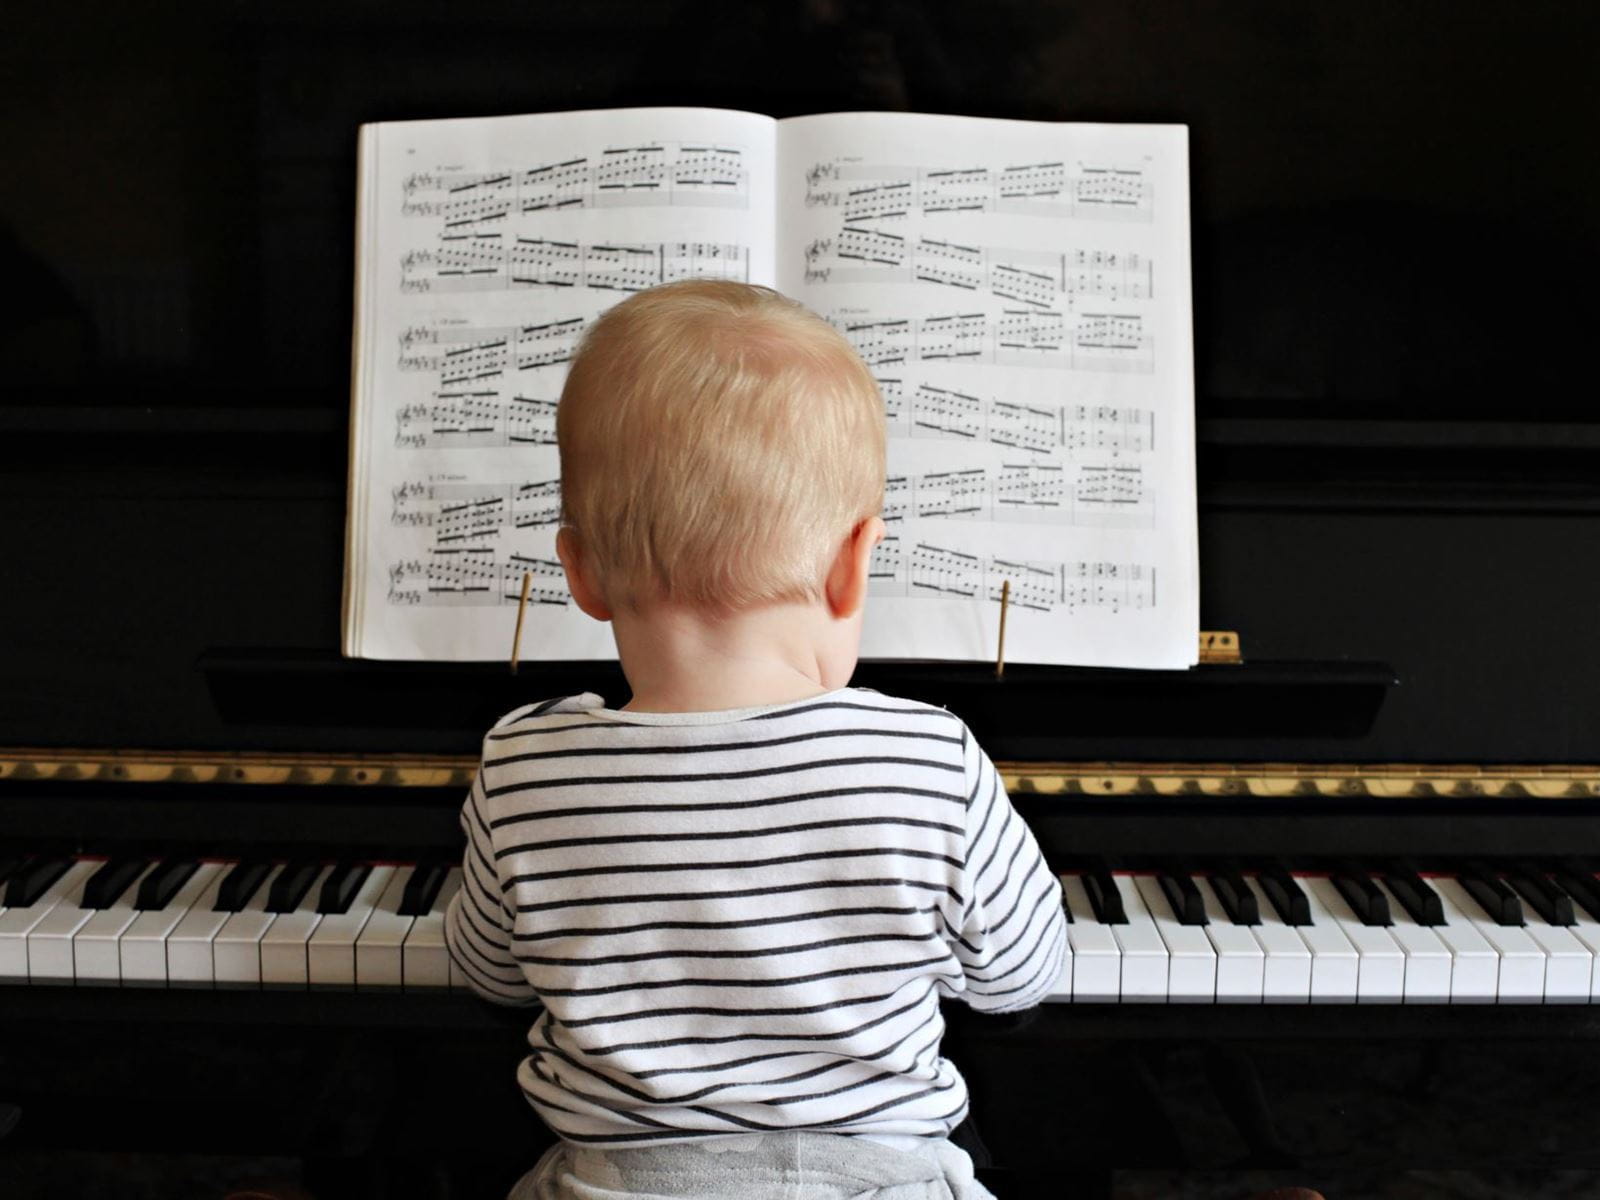 muzika-za-bebe